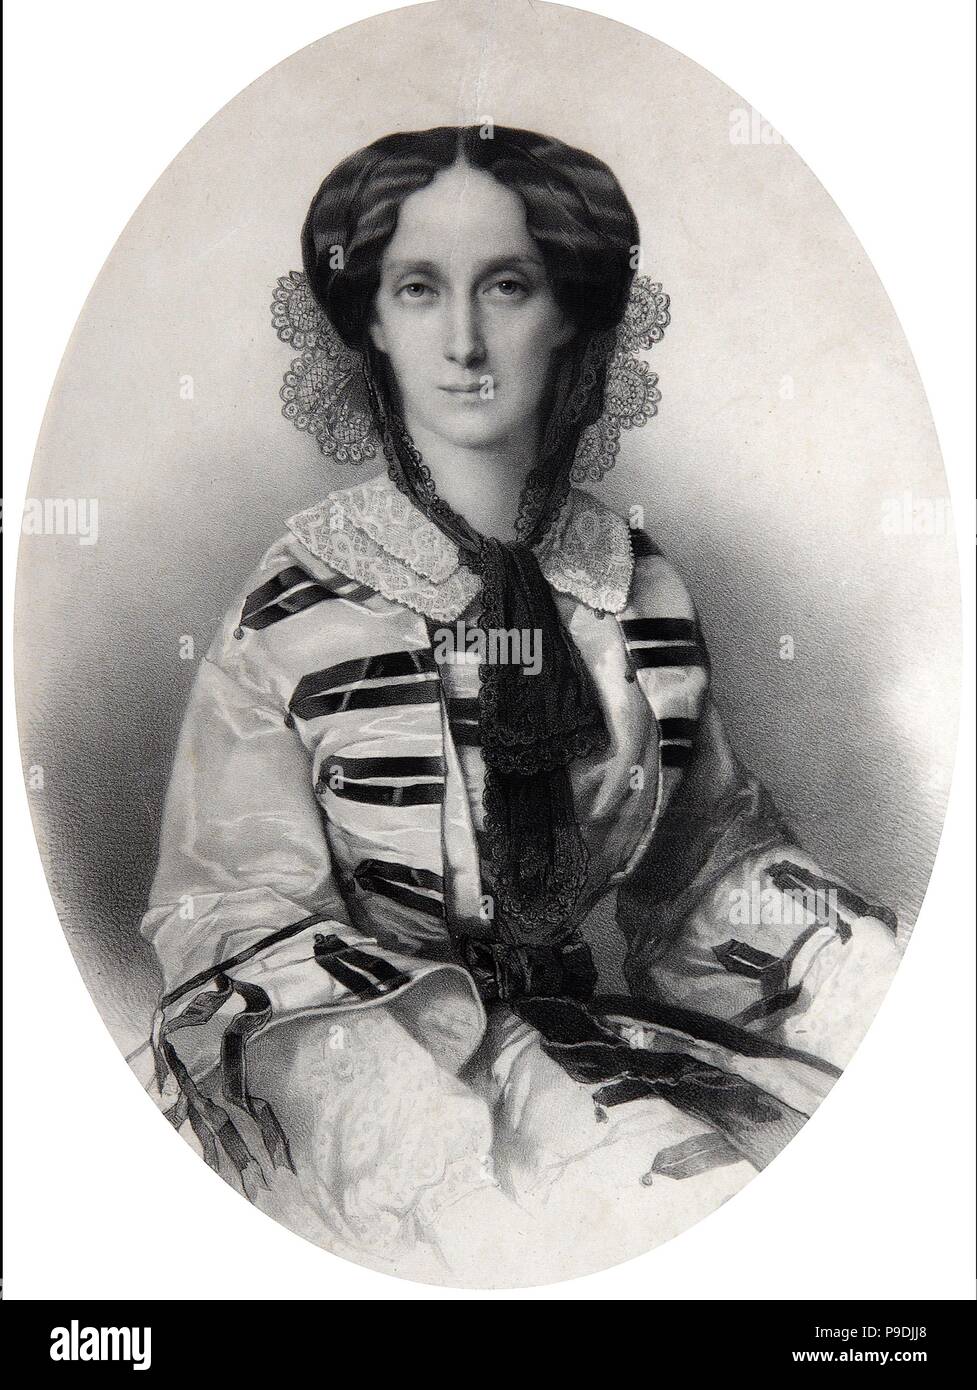 Retrato de la Emperatriz María Alexandrovna de Rusia (1824-1880). Museo: Colección privada. Foto de stock